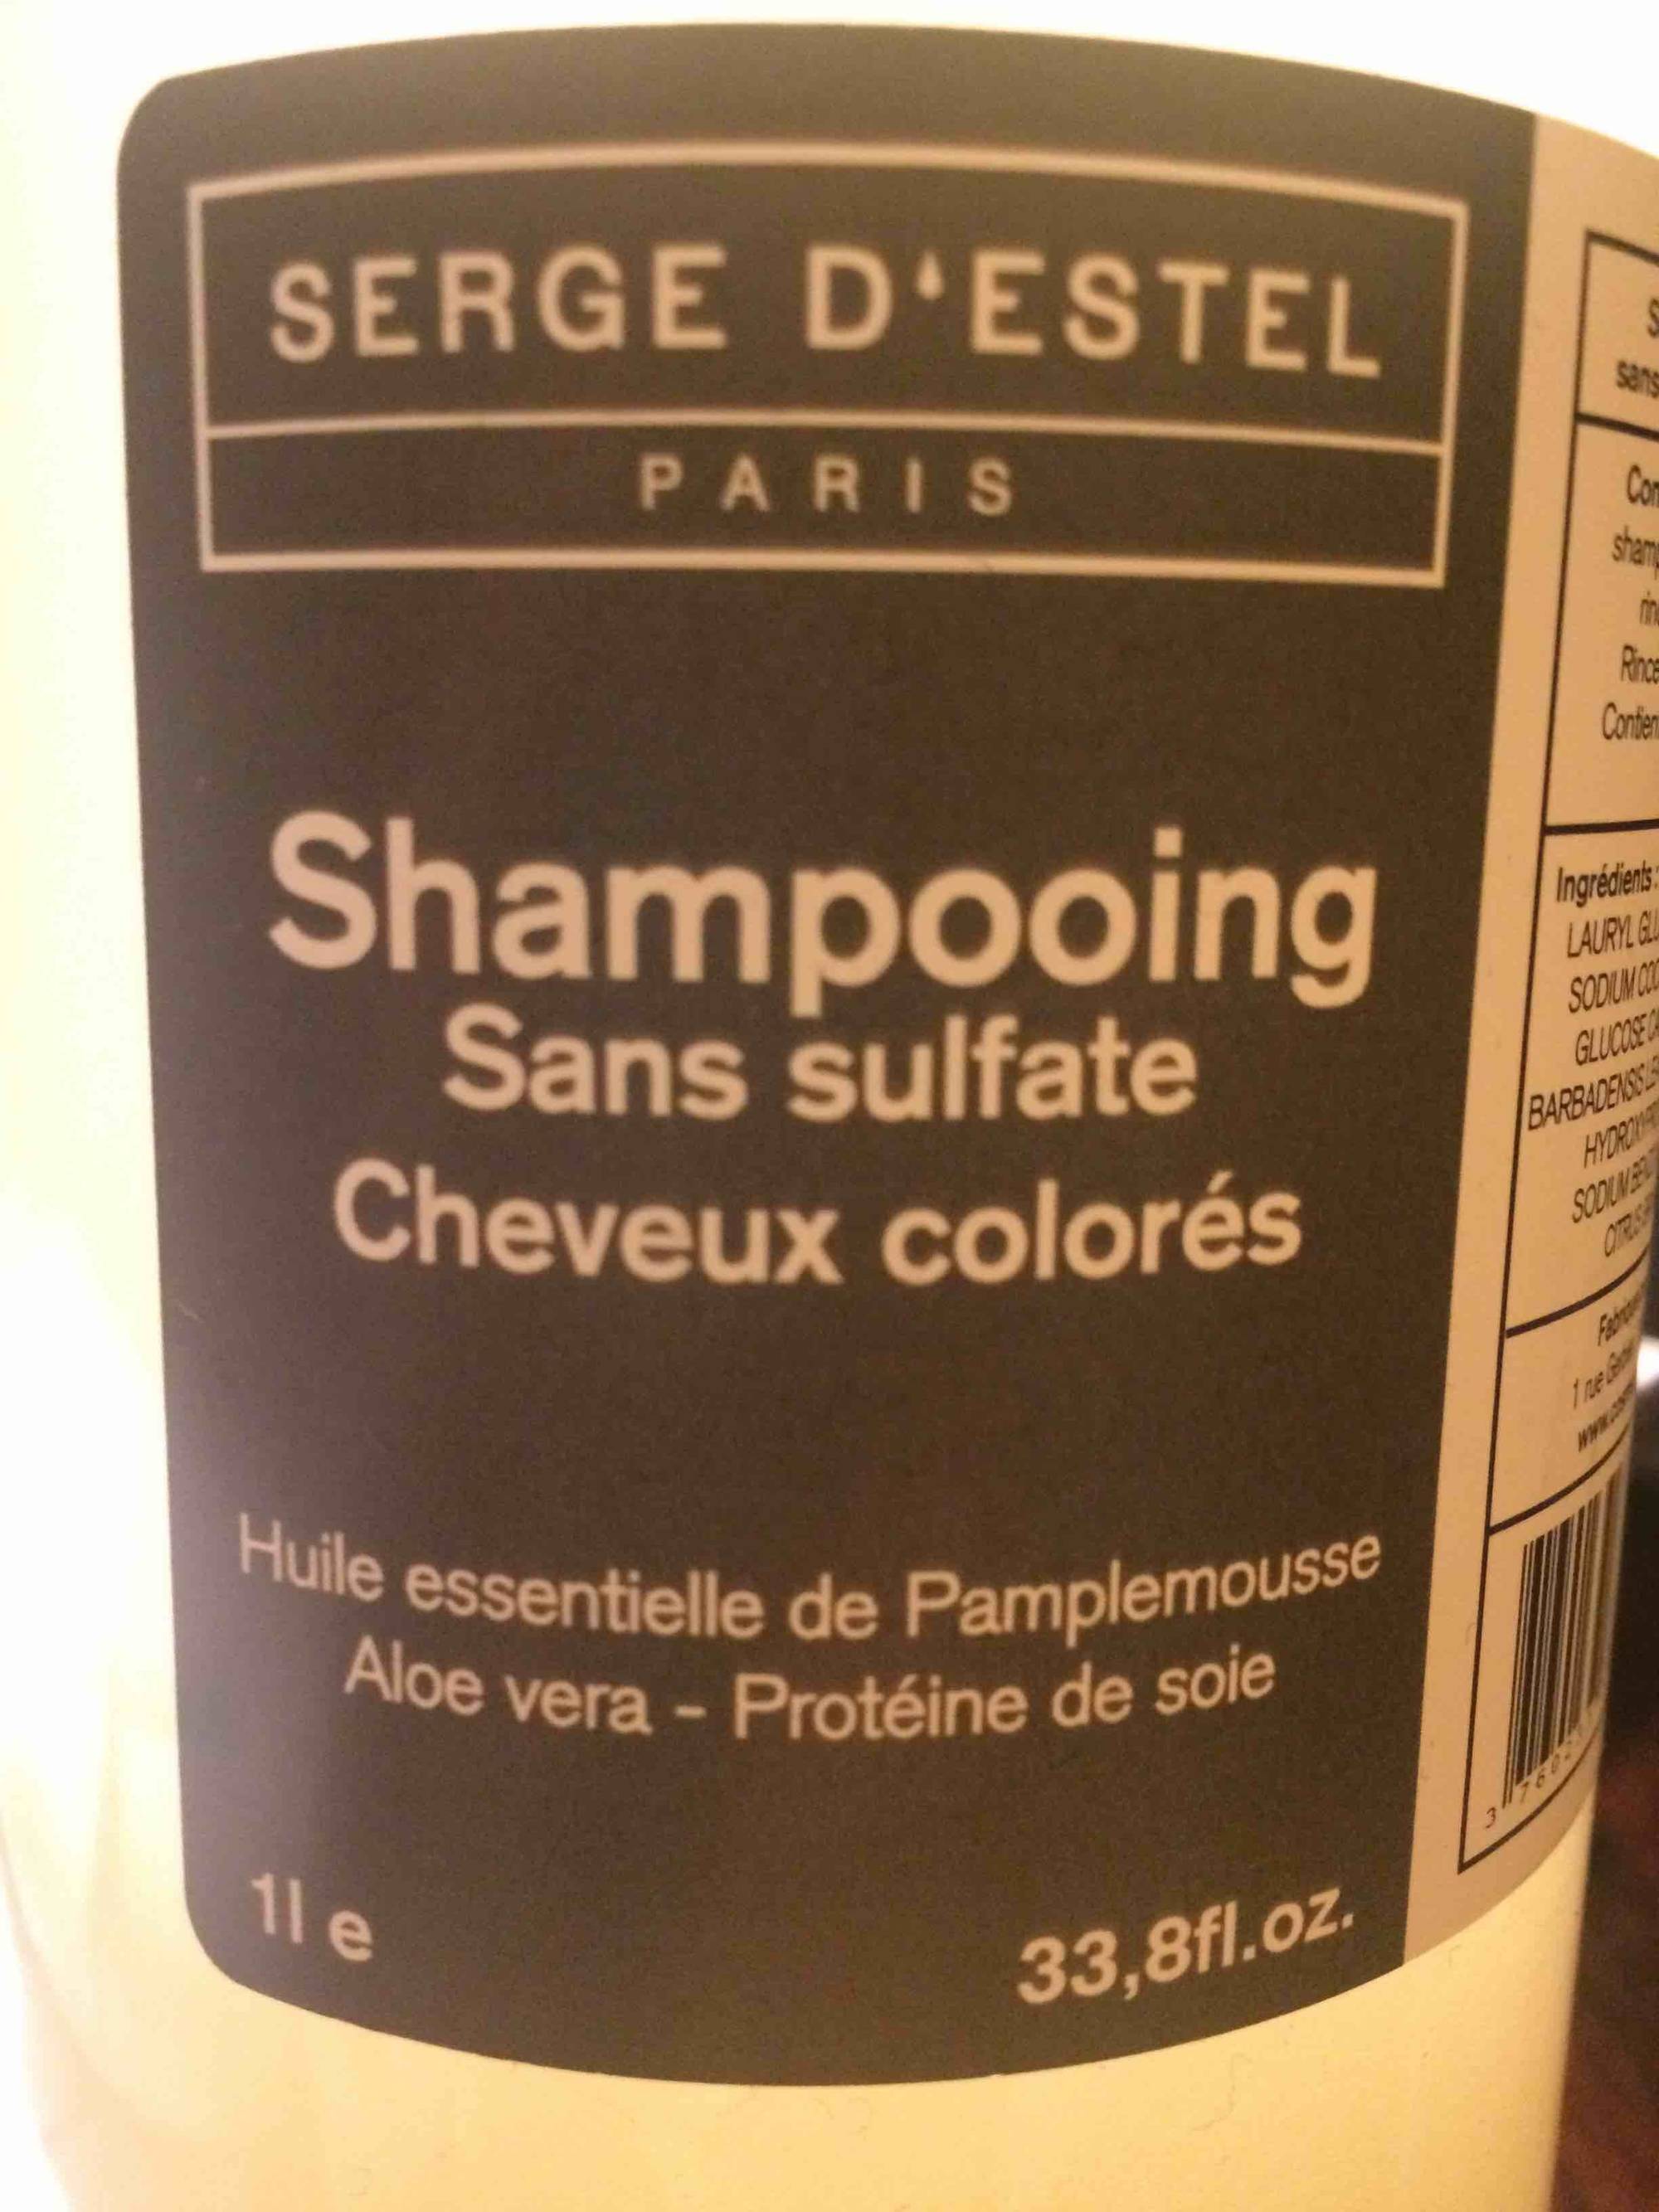 SERGE D'ESTEL - Shampooing sans sulfate cheveux colorés